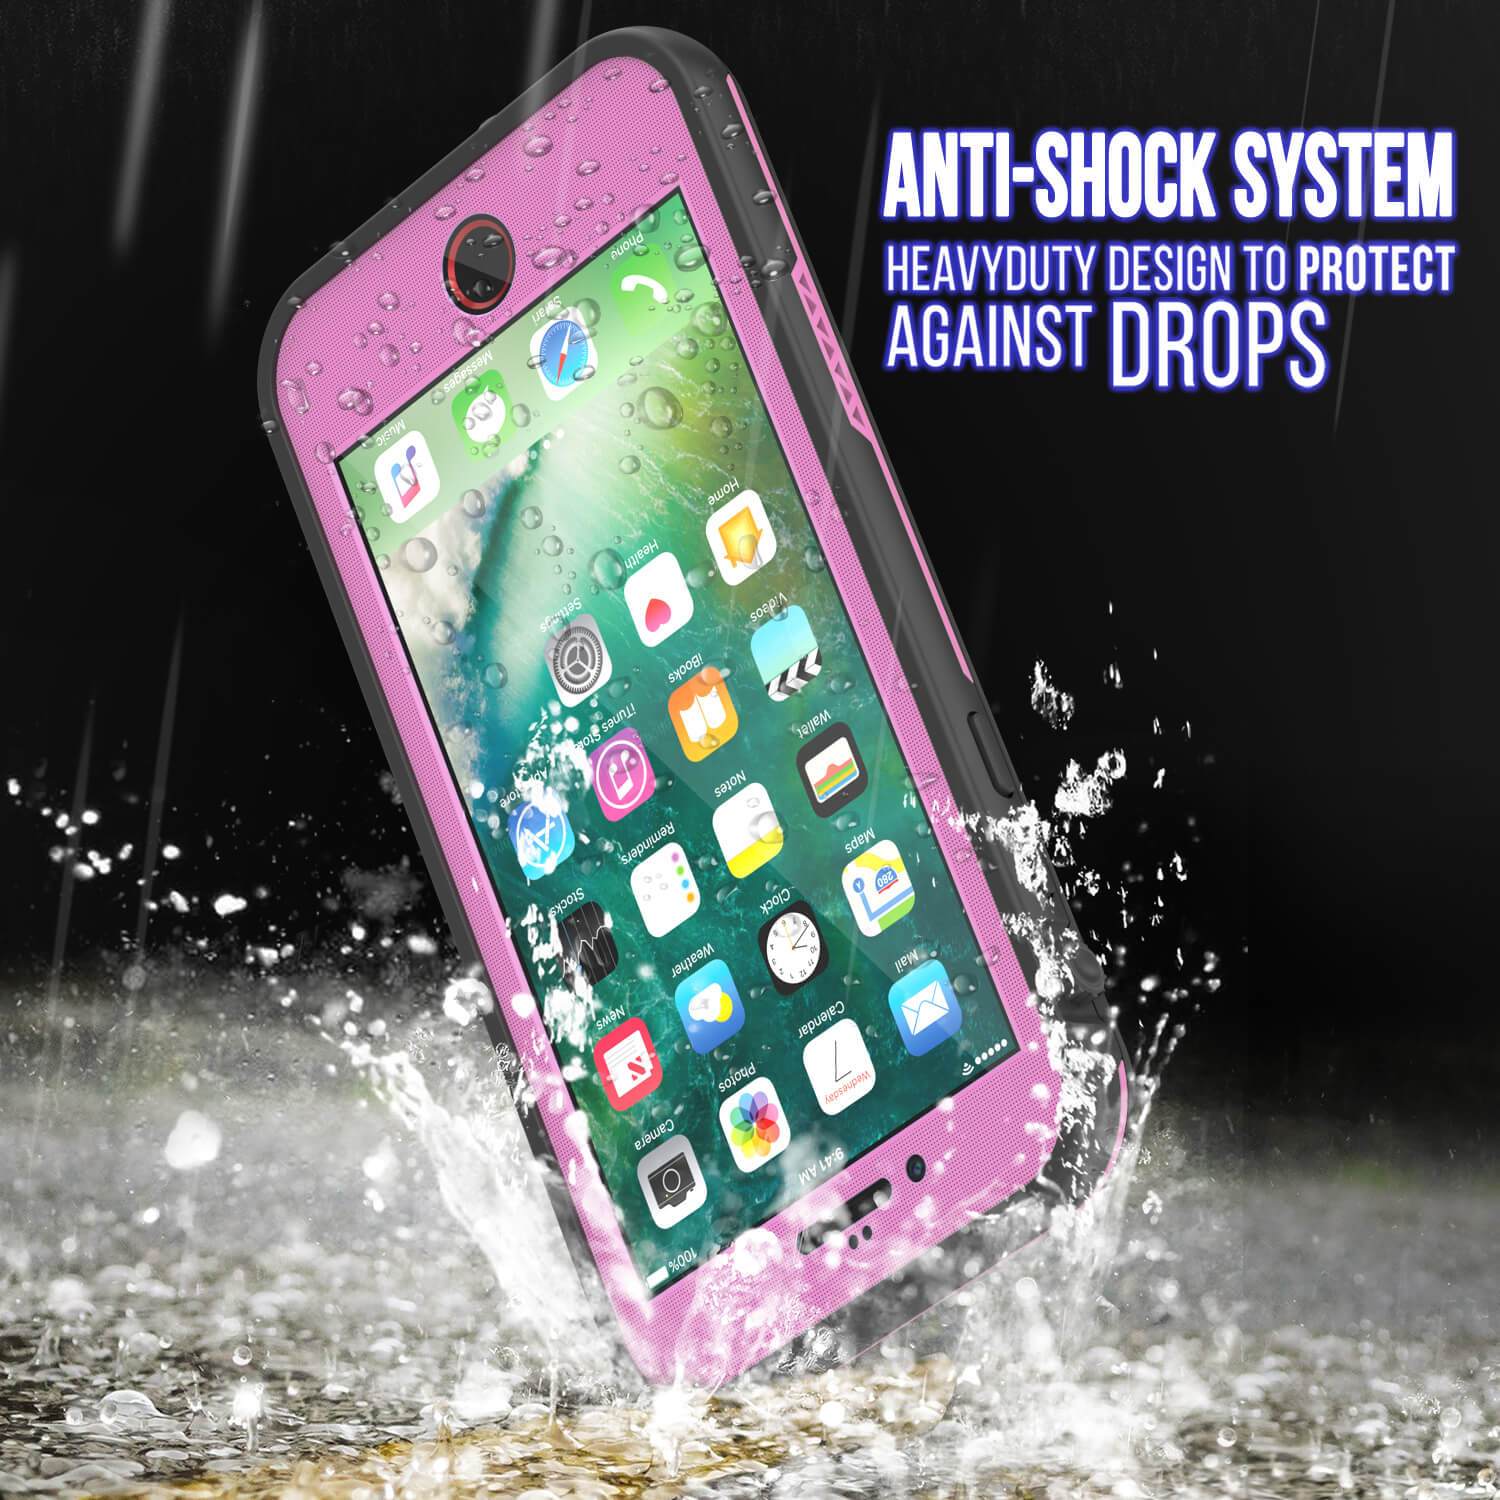 iPhone 8 Plus Waterproof Case, Punkcase SpikeStas Series, PINK